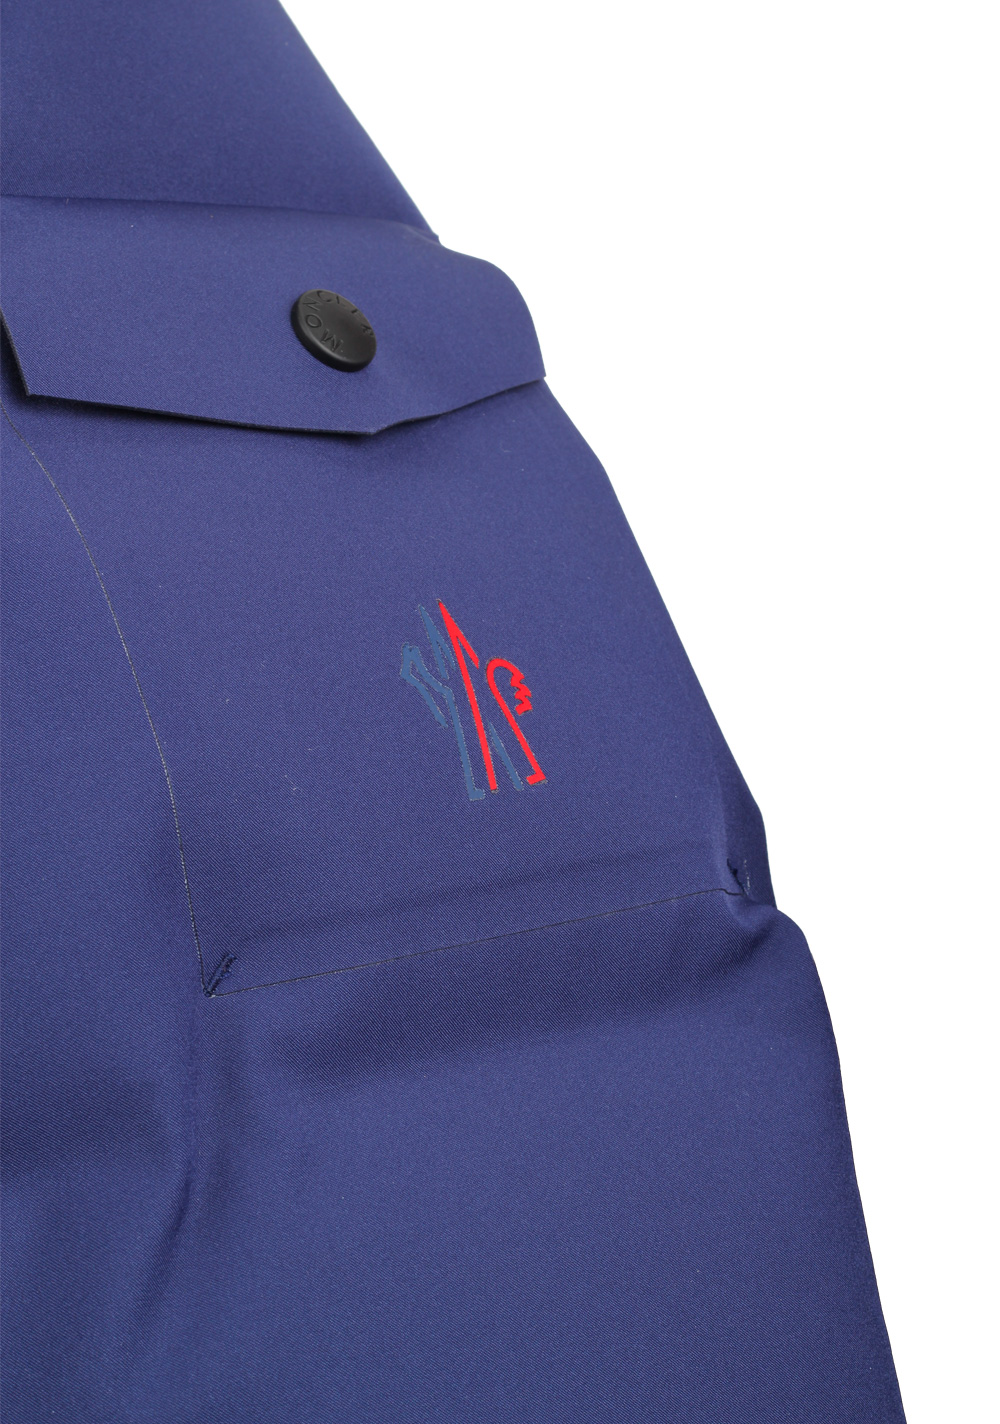 Moncler Grenoble Montgetech Jacket Coat Size 5 / XL / 54 / 44 U.S. | Costume Limité